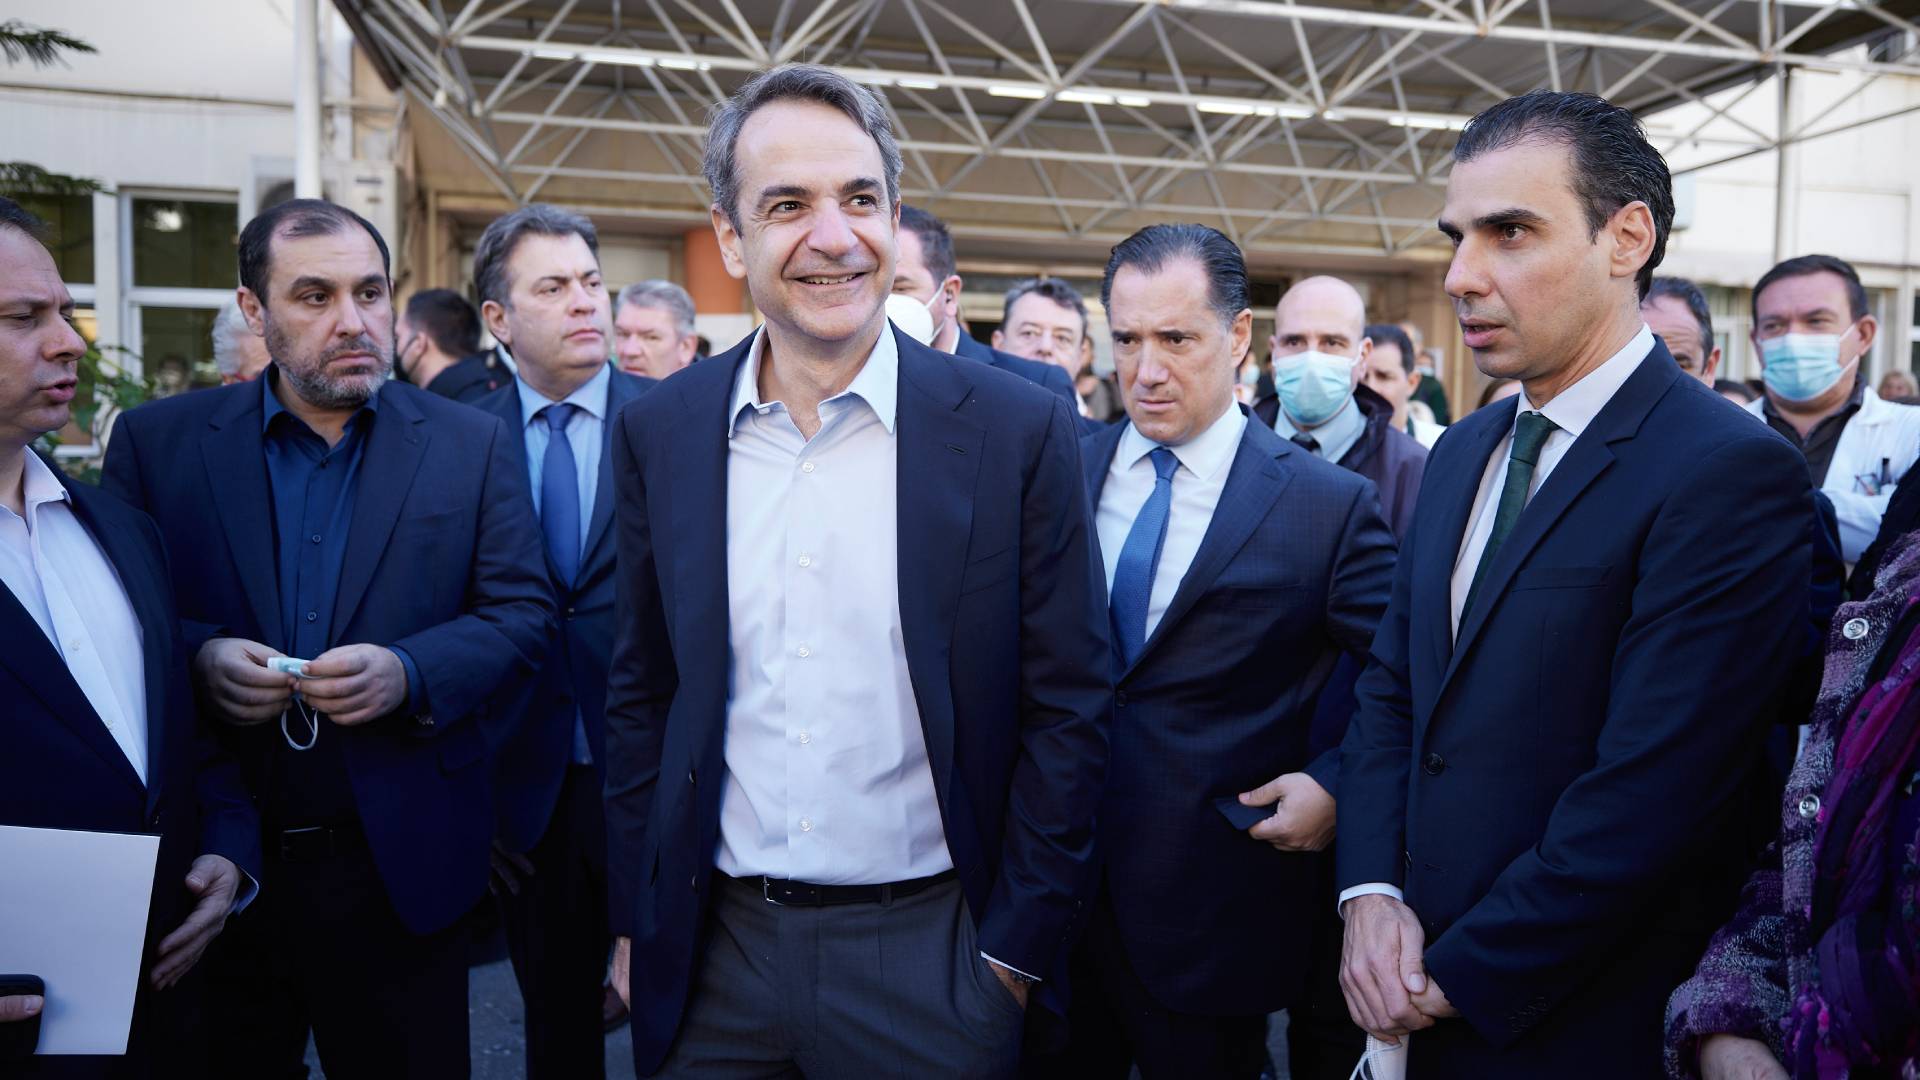 Στο Τζάνειο ο πρωθυπουργός Κ. Μητσοτάκης: “Οραματιζόμαστε ένα ΕΣΥ με ποιοτικές δομές”